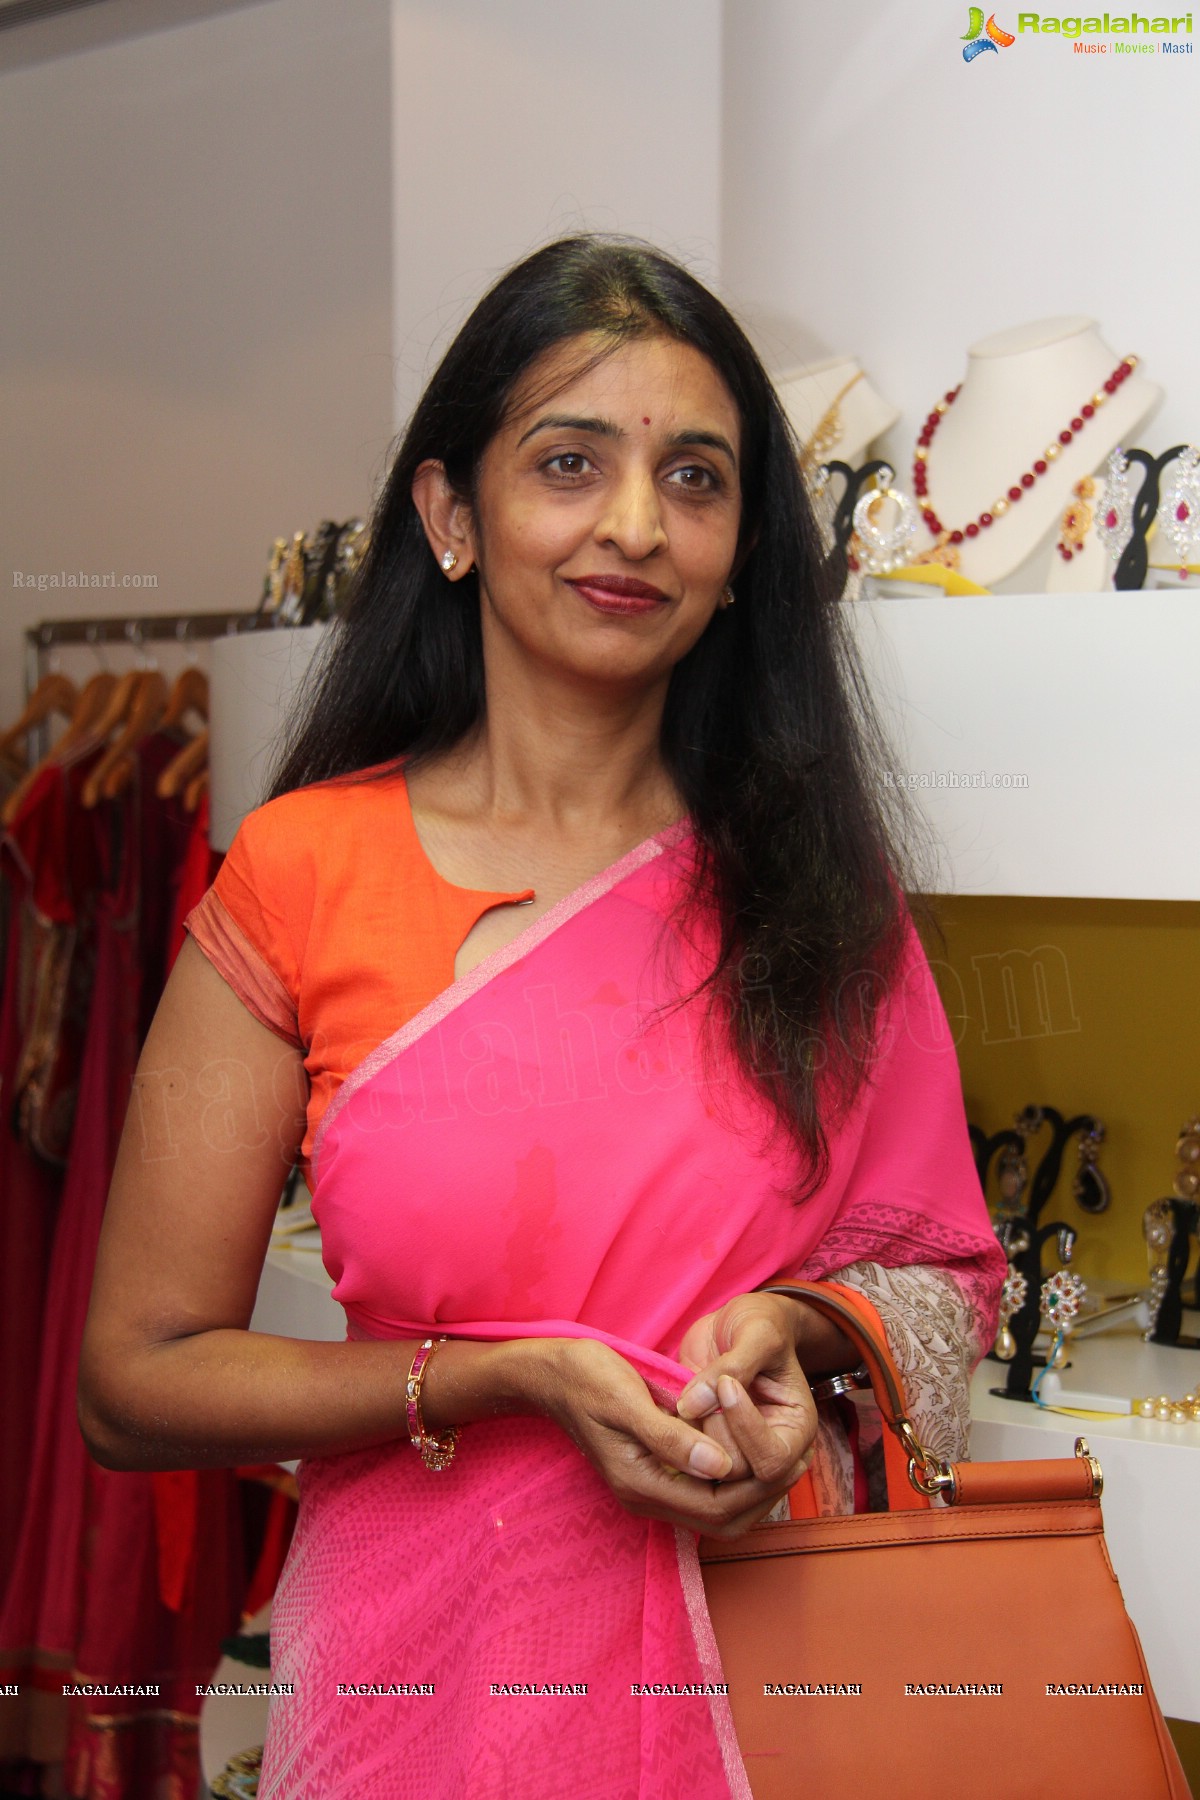 Priyanka Chigurupati Fall/Winter 2013 Collections Preview at Anahita, Hyderabad